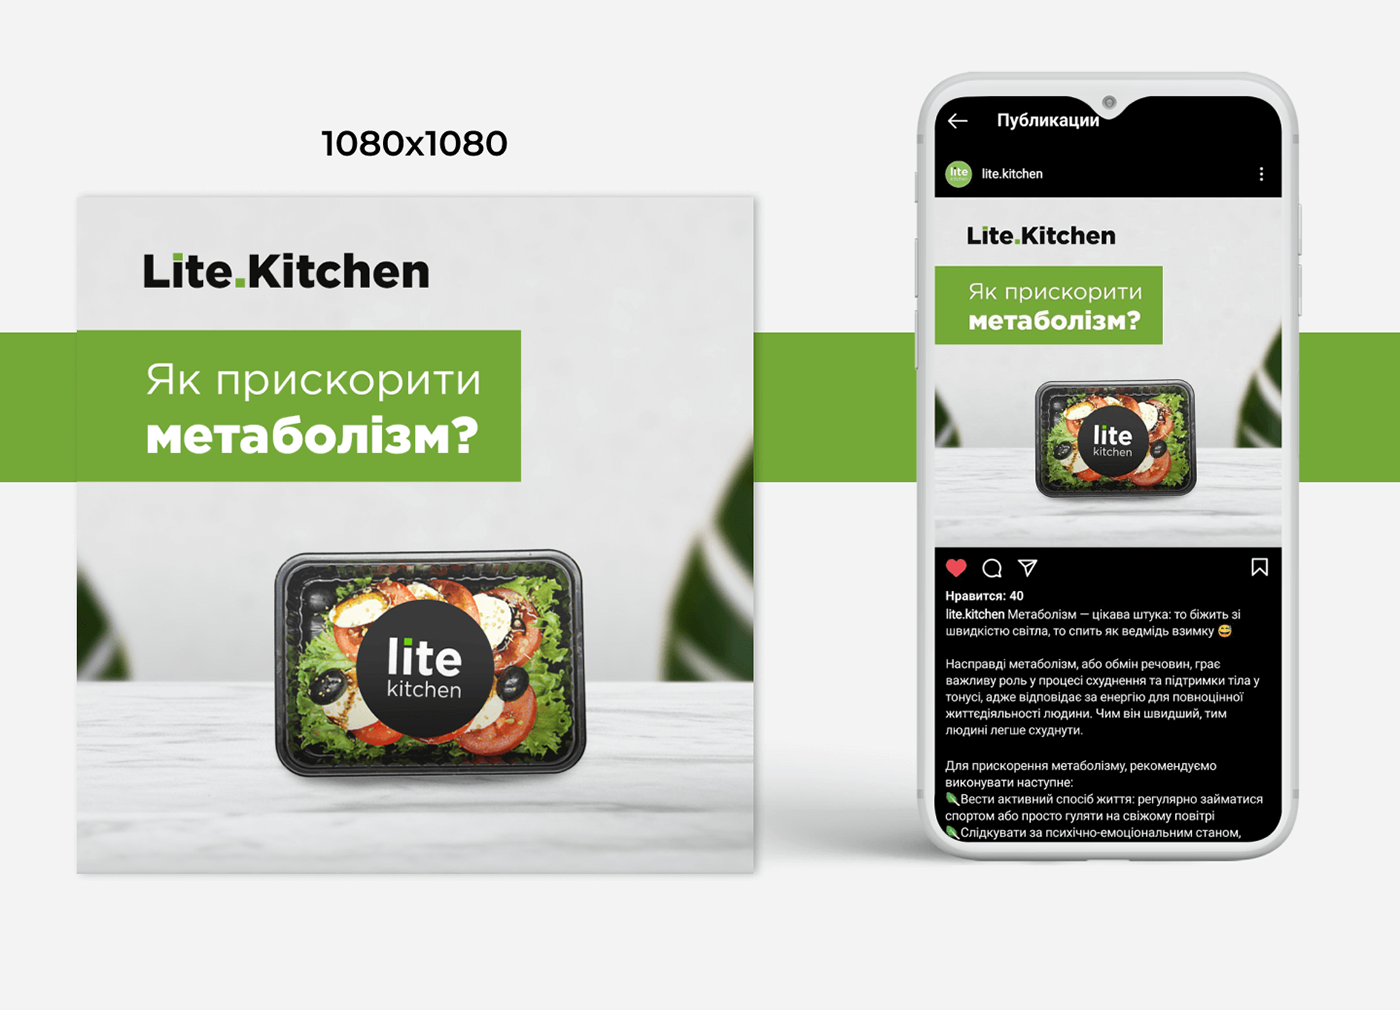 Advertising  social media Web Design  баннеры инстаграм веб дизайн реклама фирменный стиль healthy food delivery доставка еды